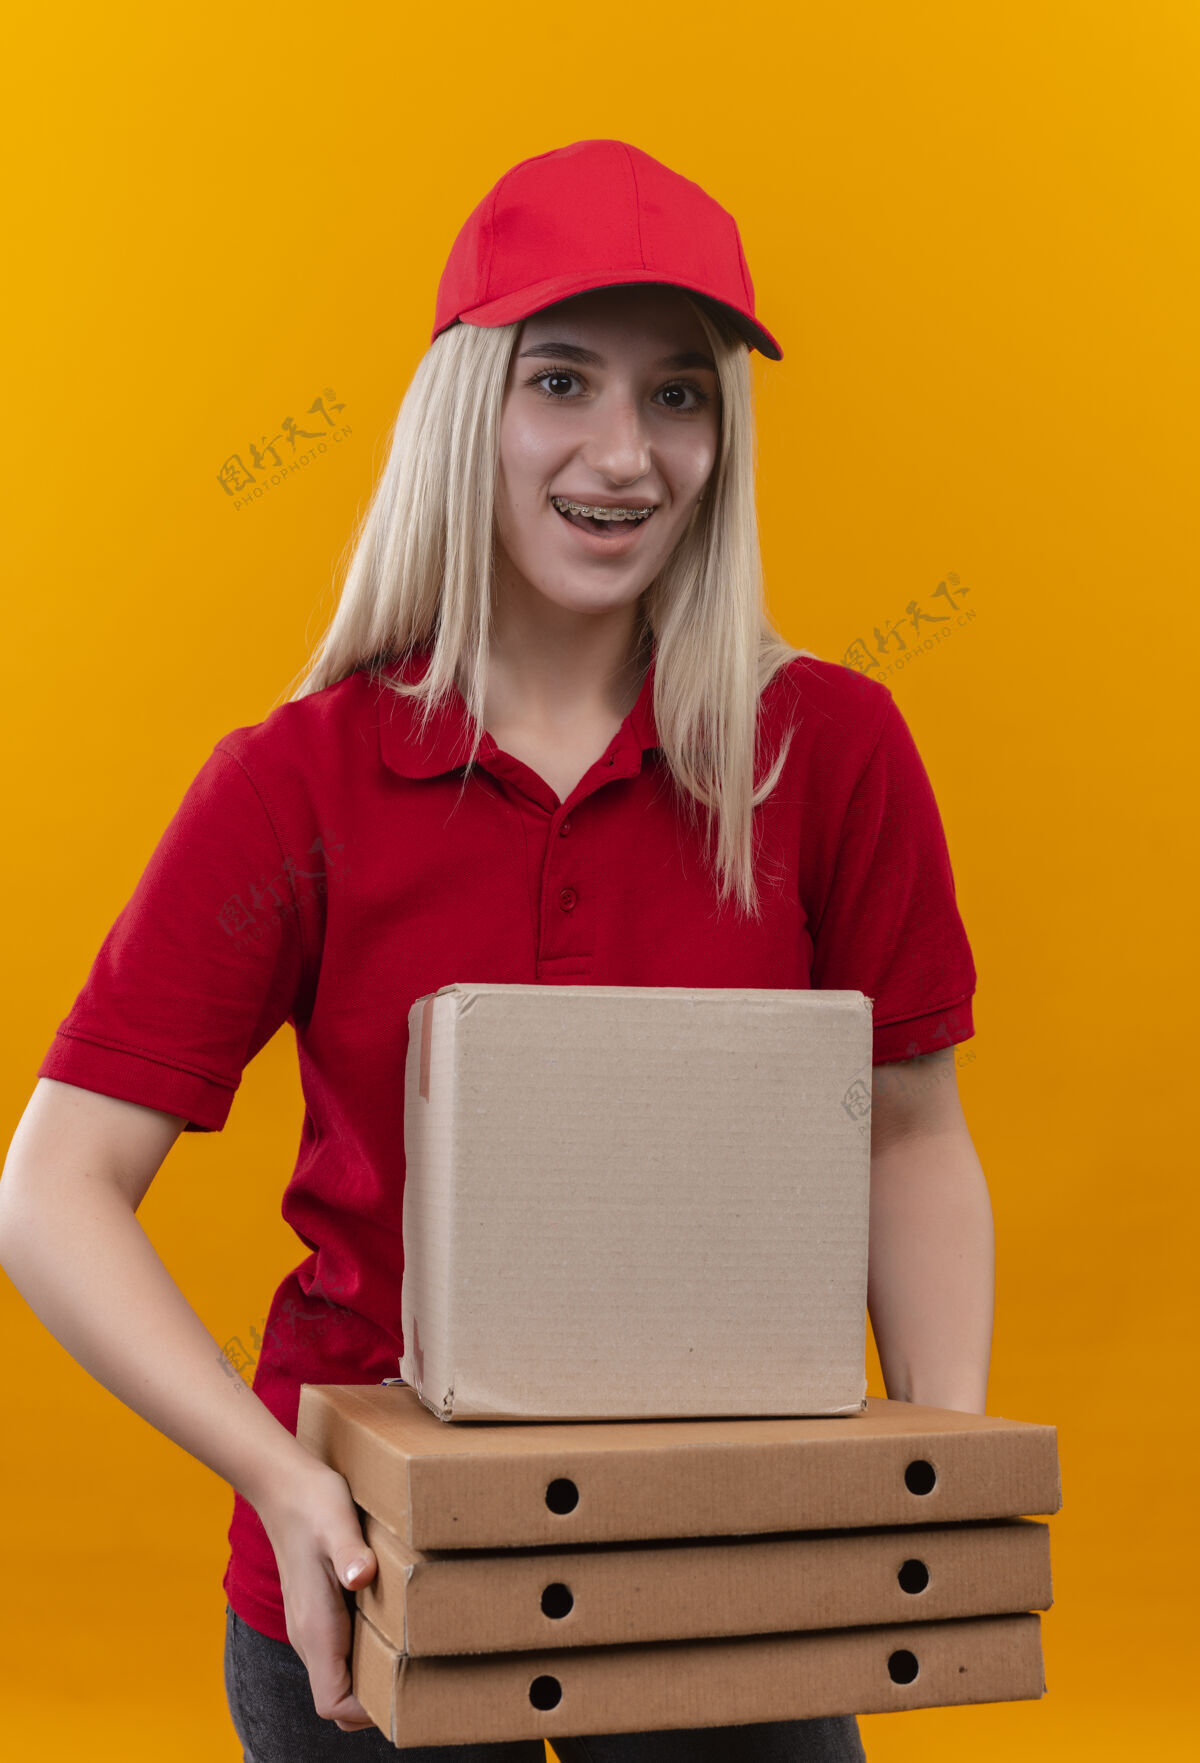 身穿红色制服、戴着帽子、头戴眼镜、低头拿着卡片盒的年轻白人送货员印象深刻产品实拍免费下载_jpg格式_编号51051247-千图网